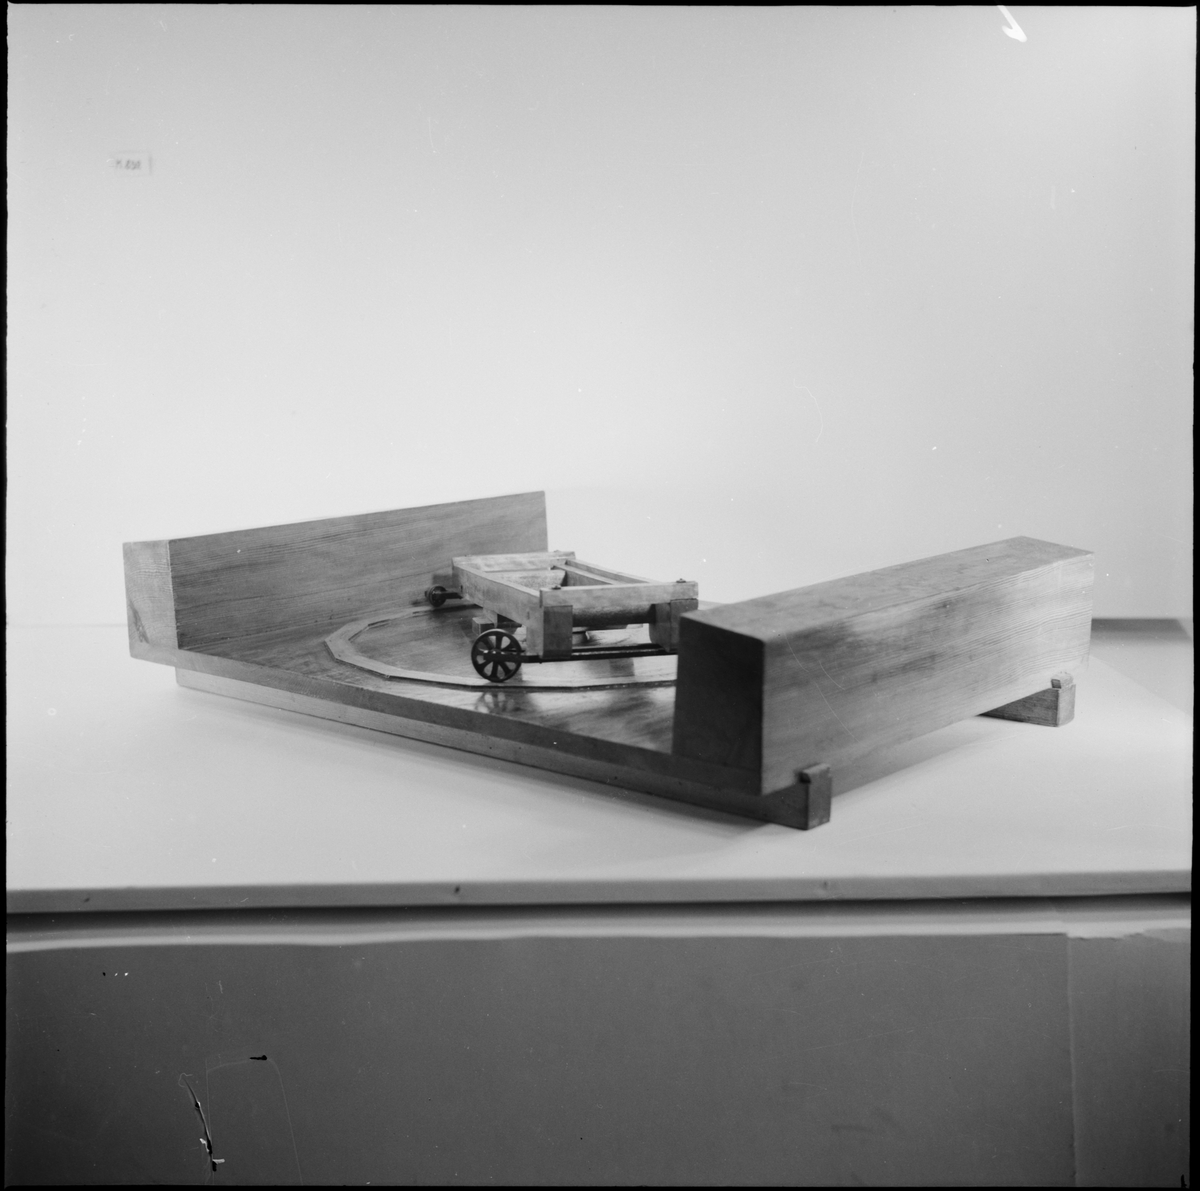 Lavettagemodell: 24-pundig lavett med svänglåda till kanoner av Dansk modell, för karponieren å sjökastellet Kungsholmen. 1/12 av rätta storleken, av C.D. Osterman år 1832. Modellen av trä, fernissad. Kanonen svart. (Kanon saknas).